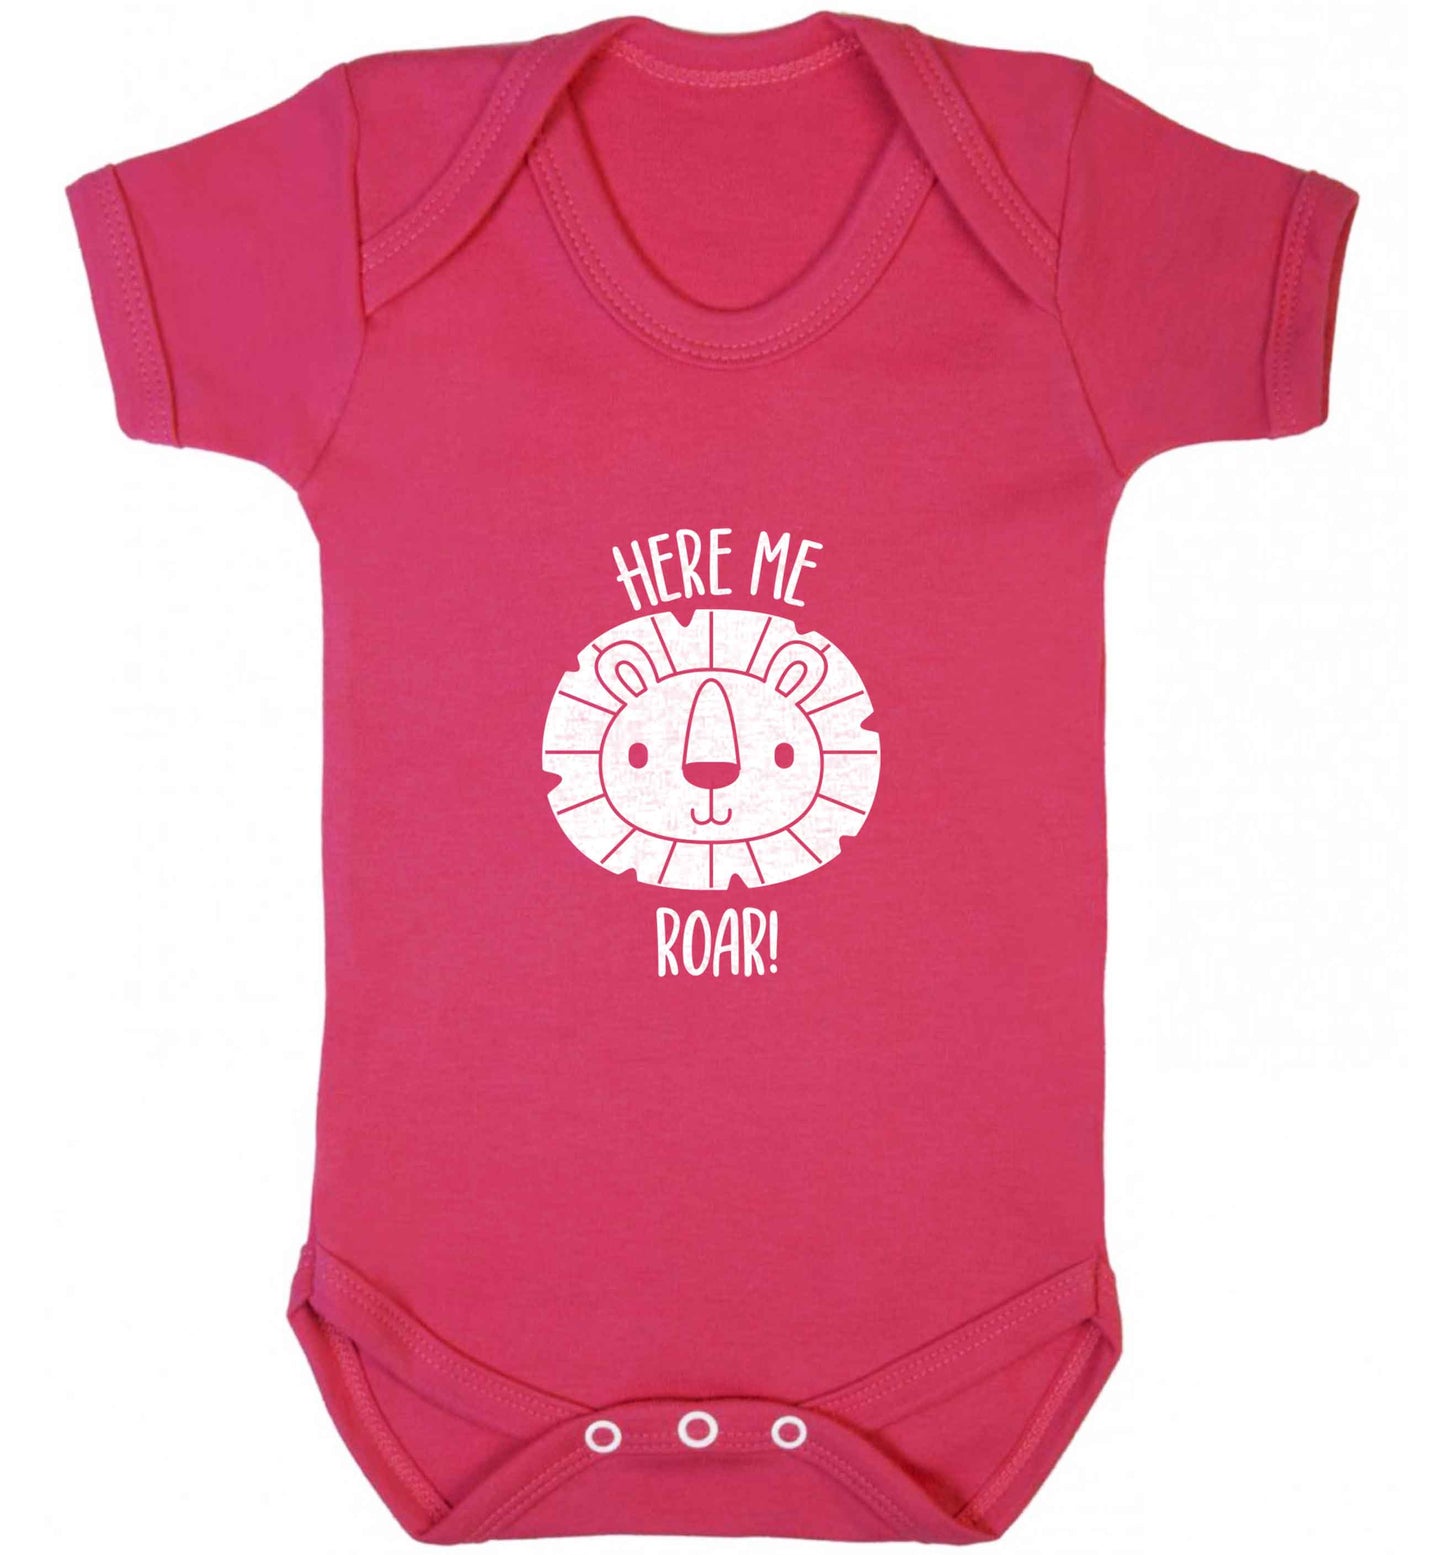 Hear me roar baby vest dark pink 18-24 months